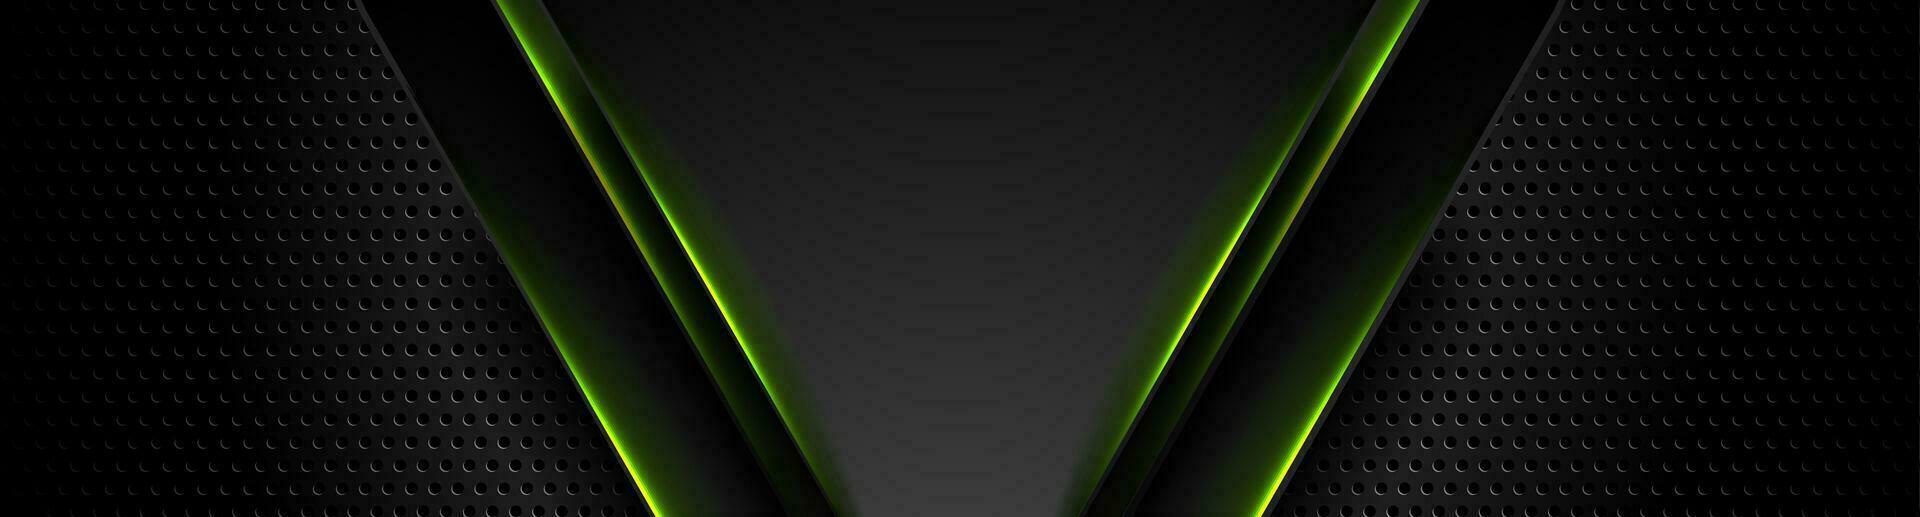 futuristische technologie achtergrond met groen neon licht vector